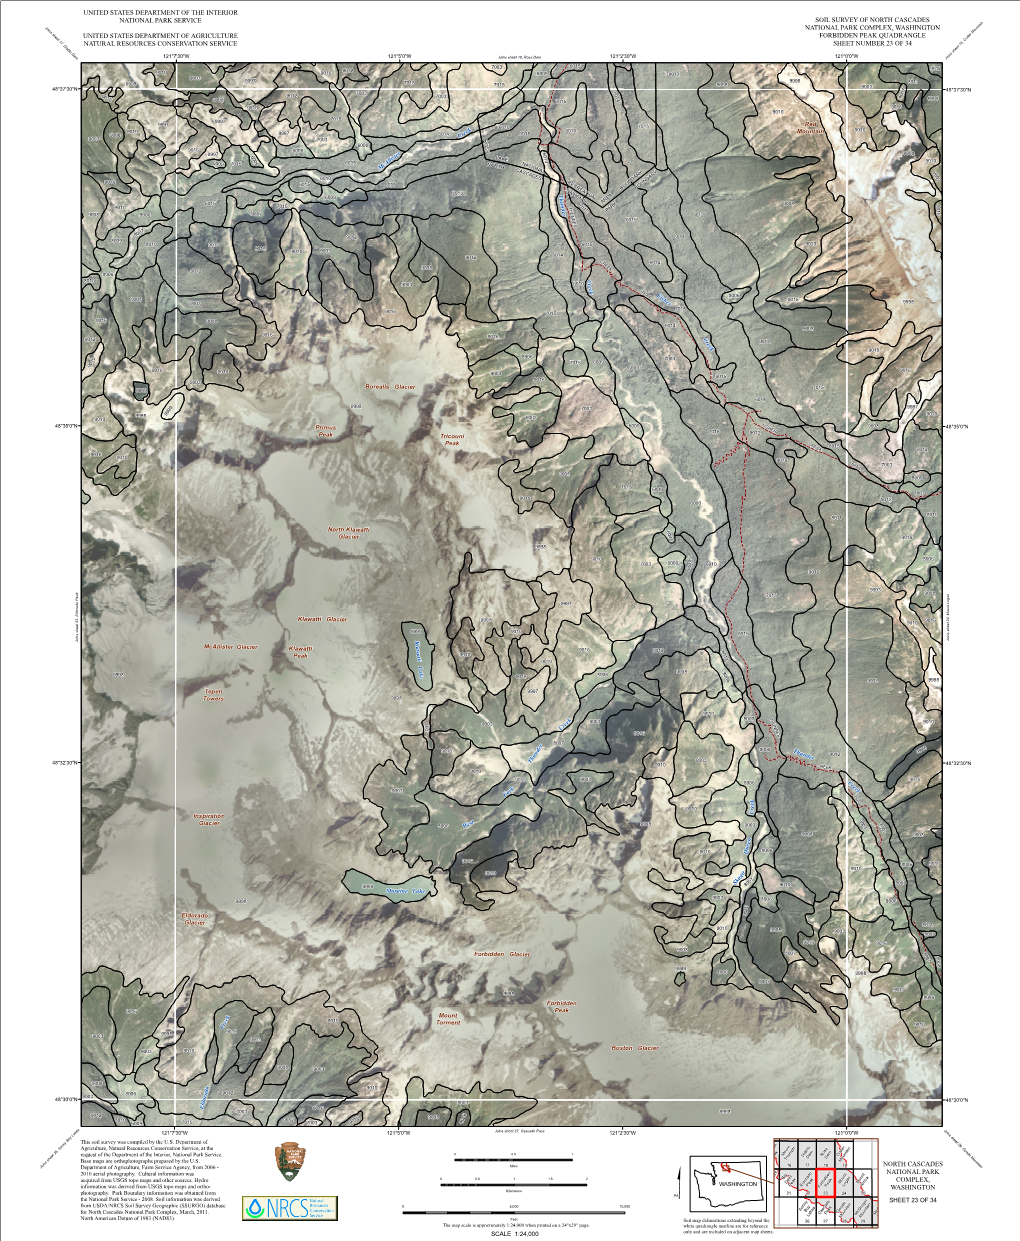 Soil Survey of North Cascades National Park Complex, Washington